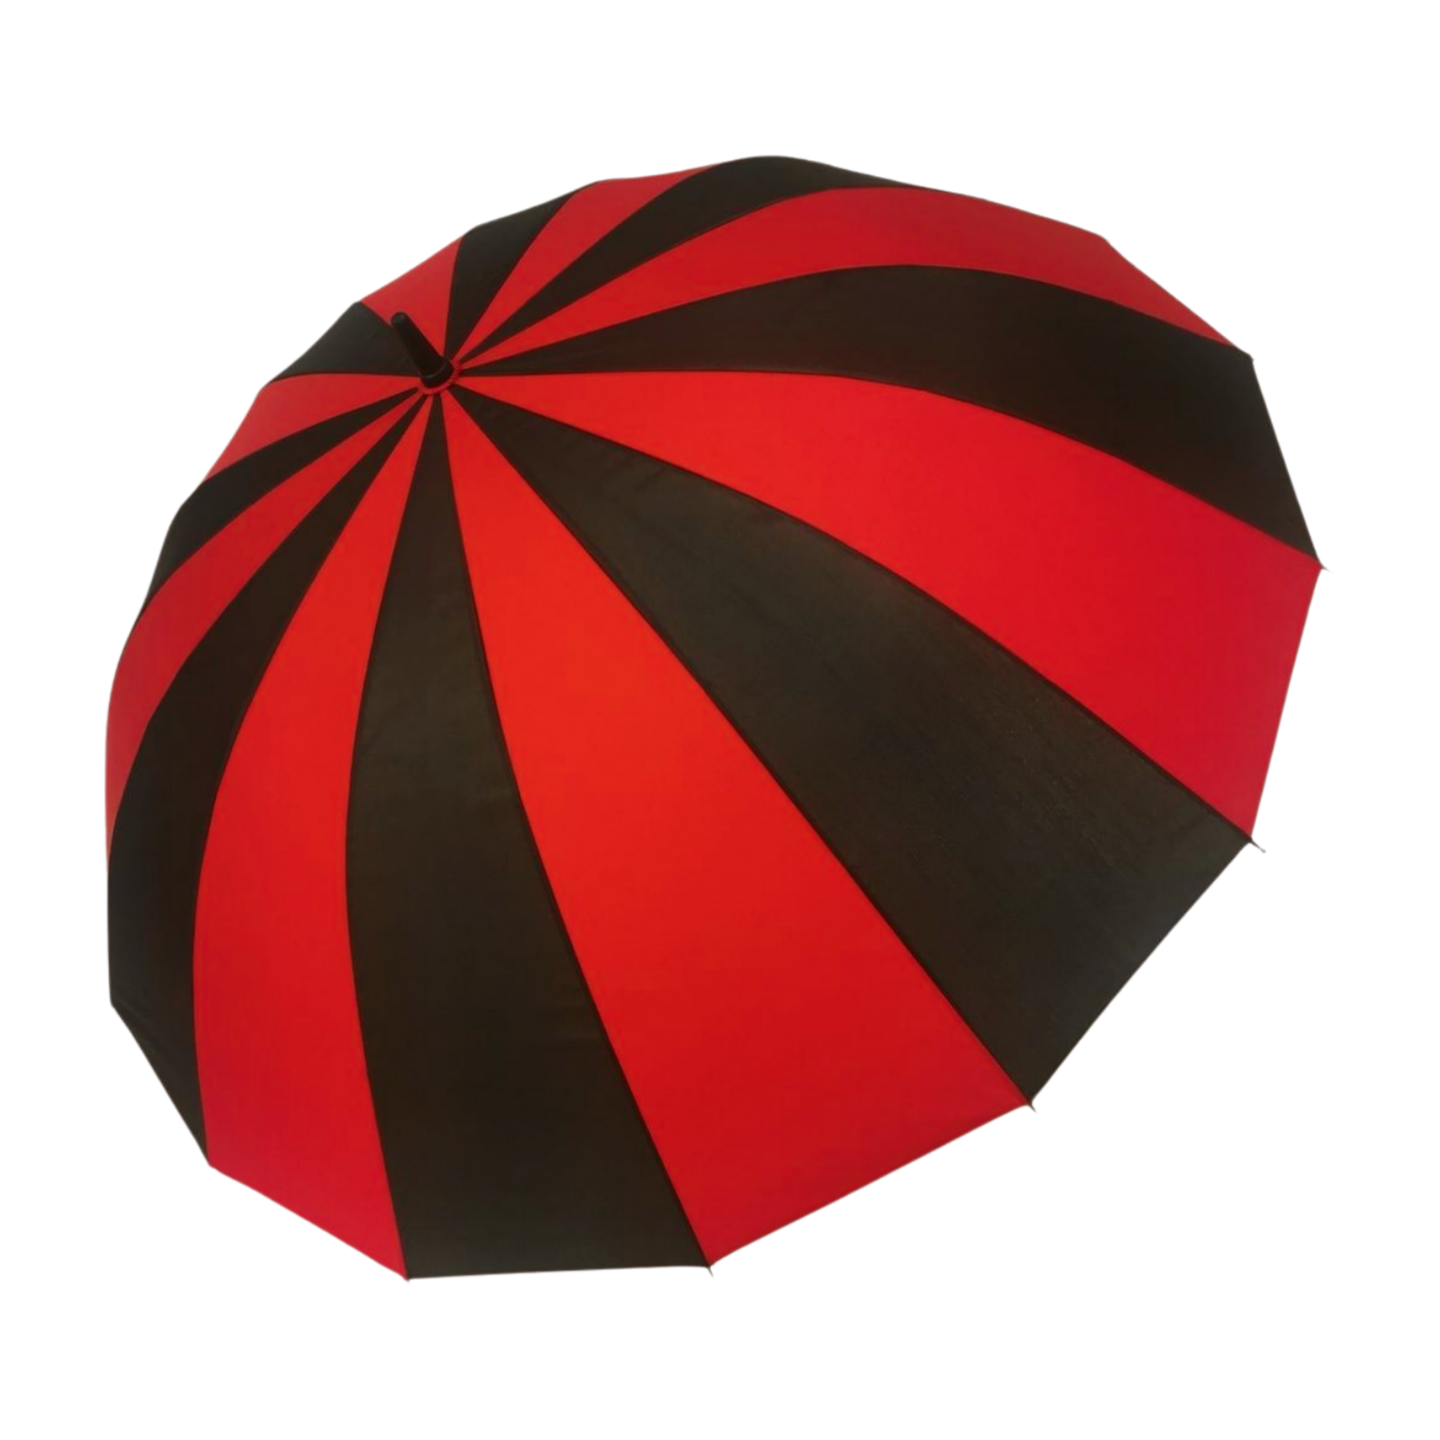 https://www.hodaumbrella.com/16-ribs-blosom-golf-umbrella-product/